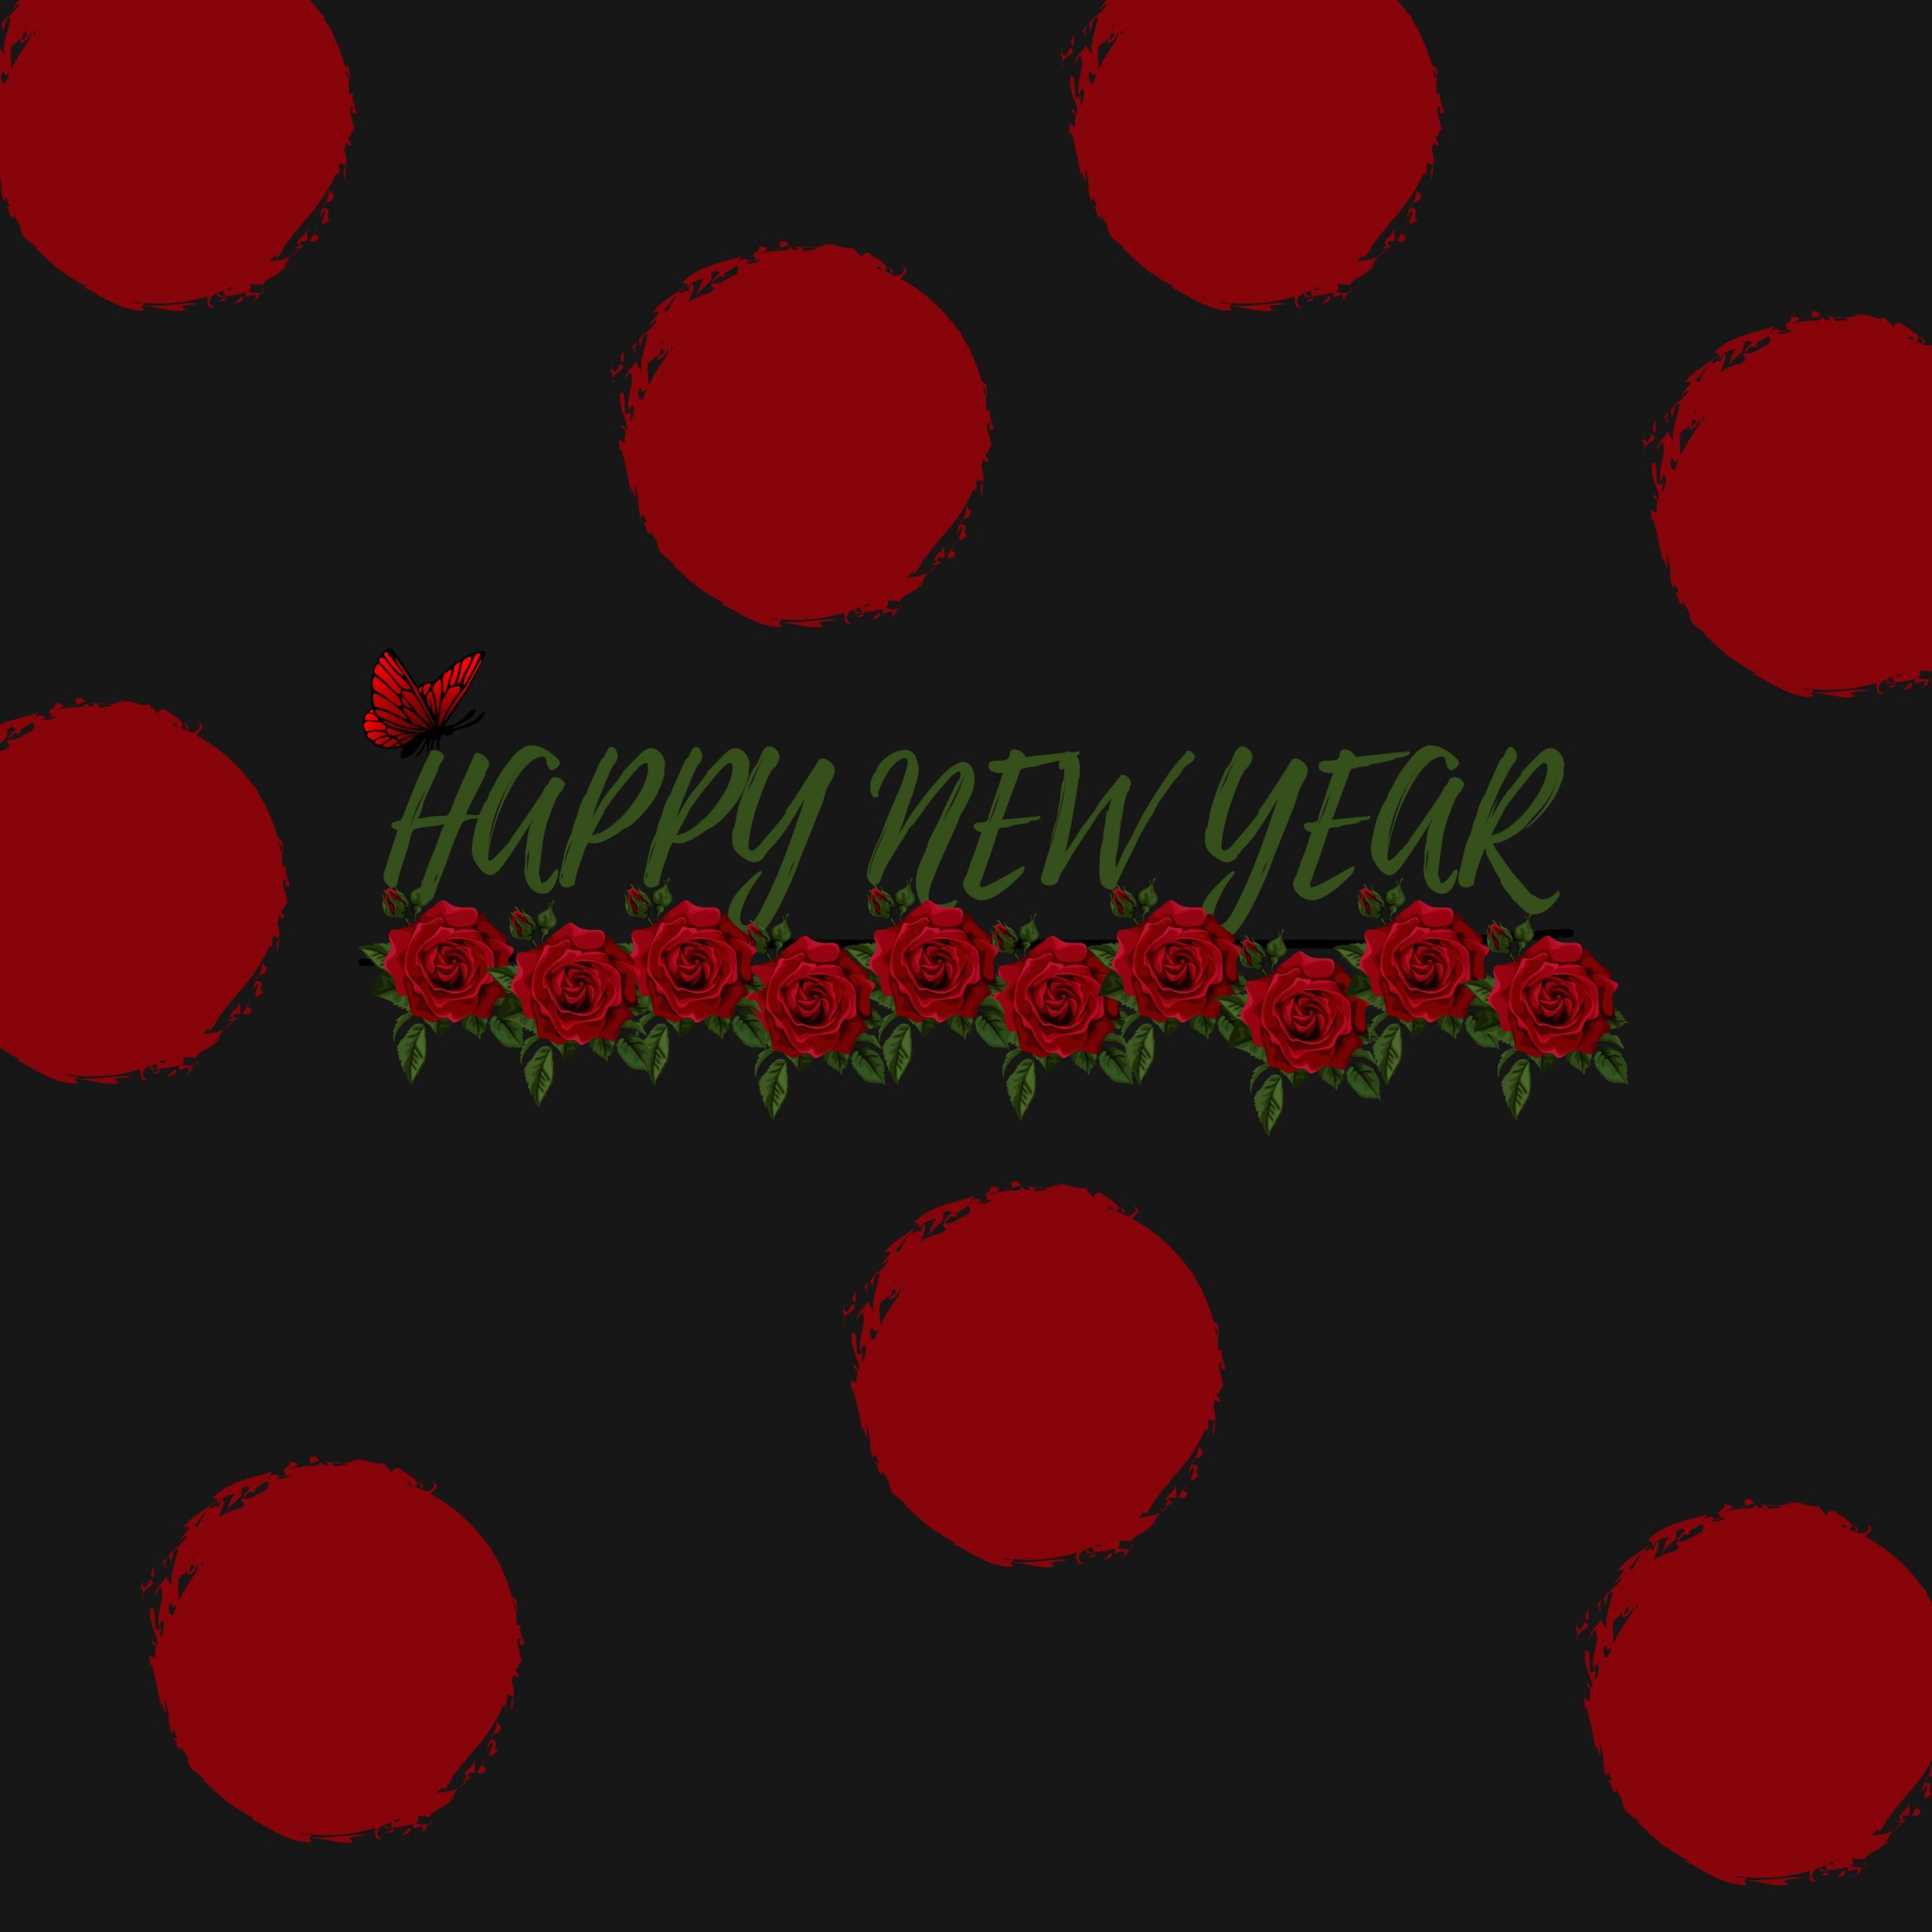 2732x2732 wallpapers 4k iPad Pro Red Poka Dot New Year Ipad Wallpaper 2732x2732 pixels resolution